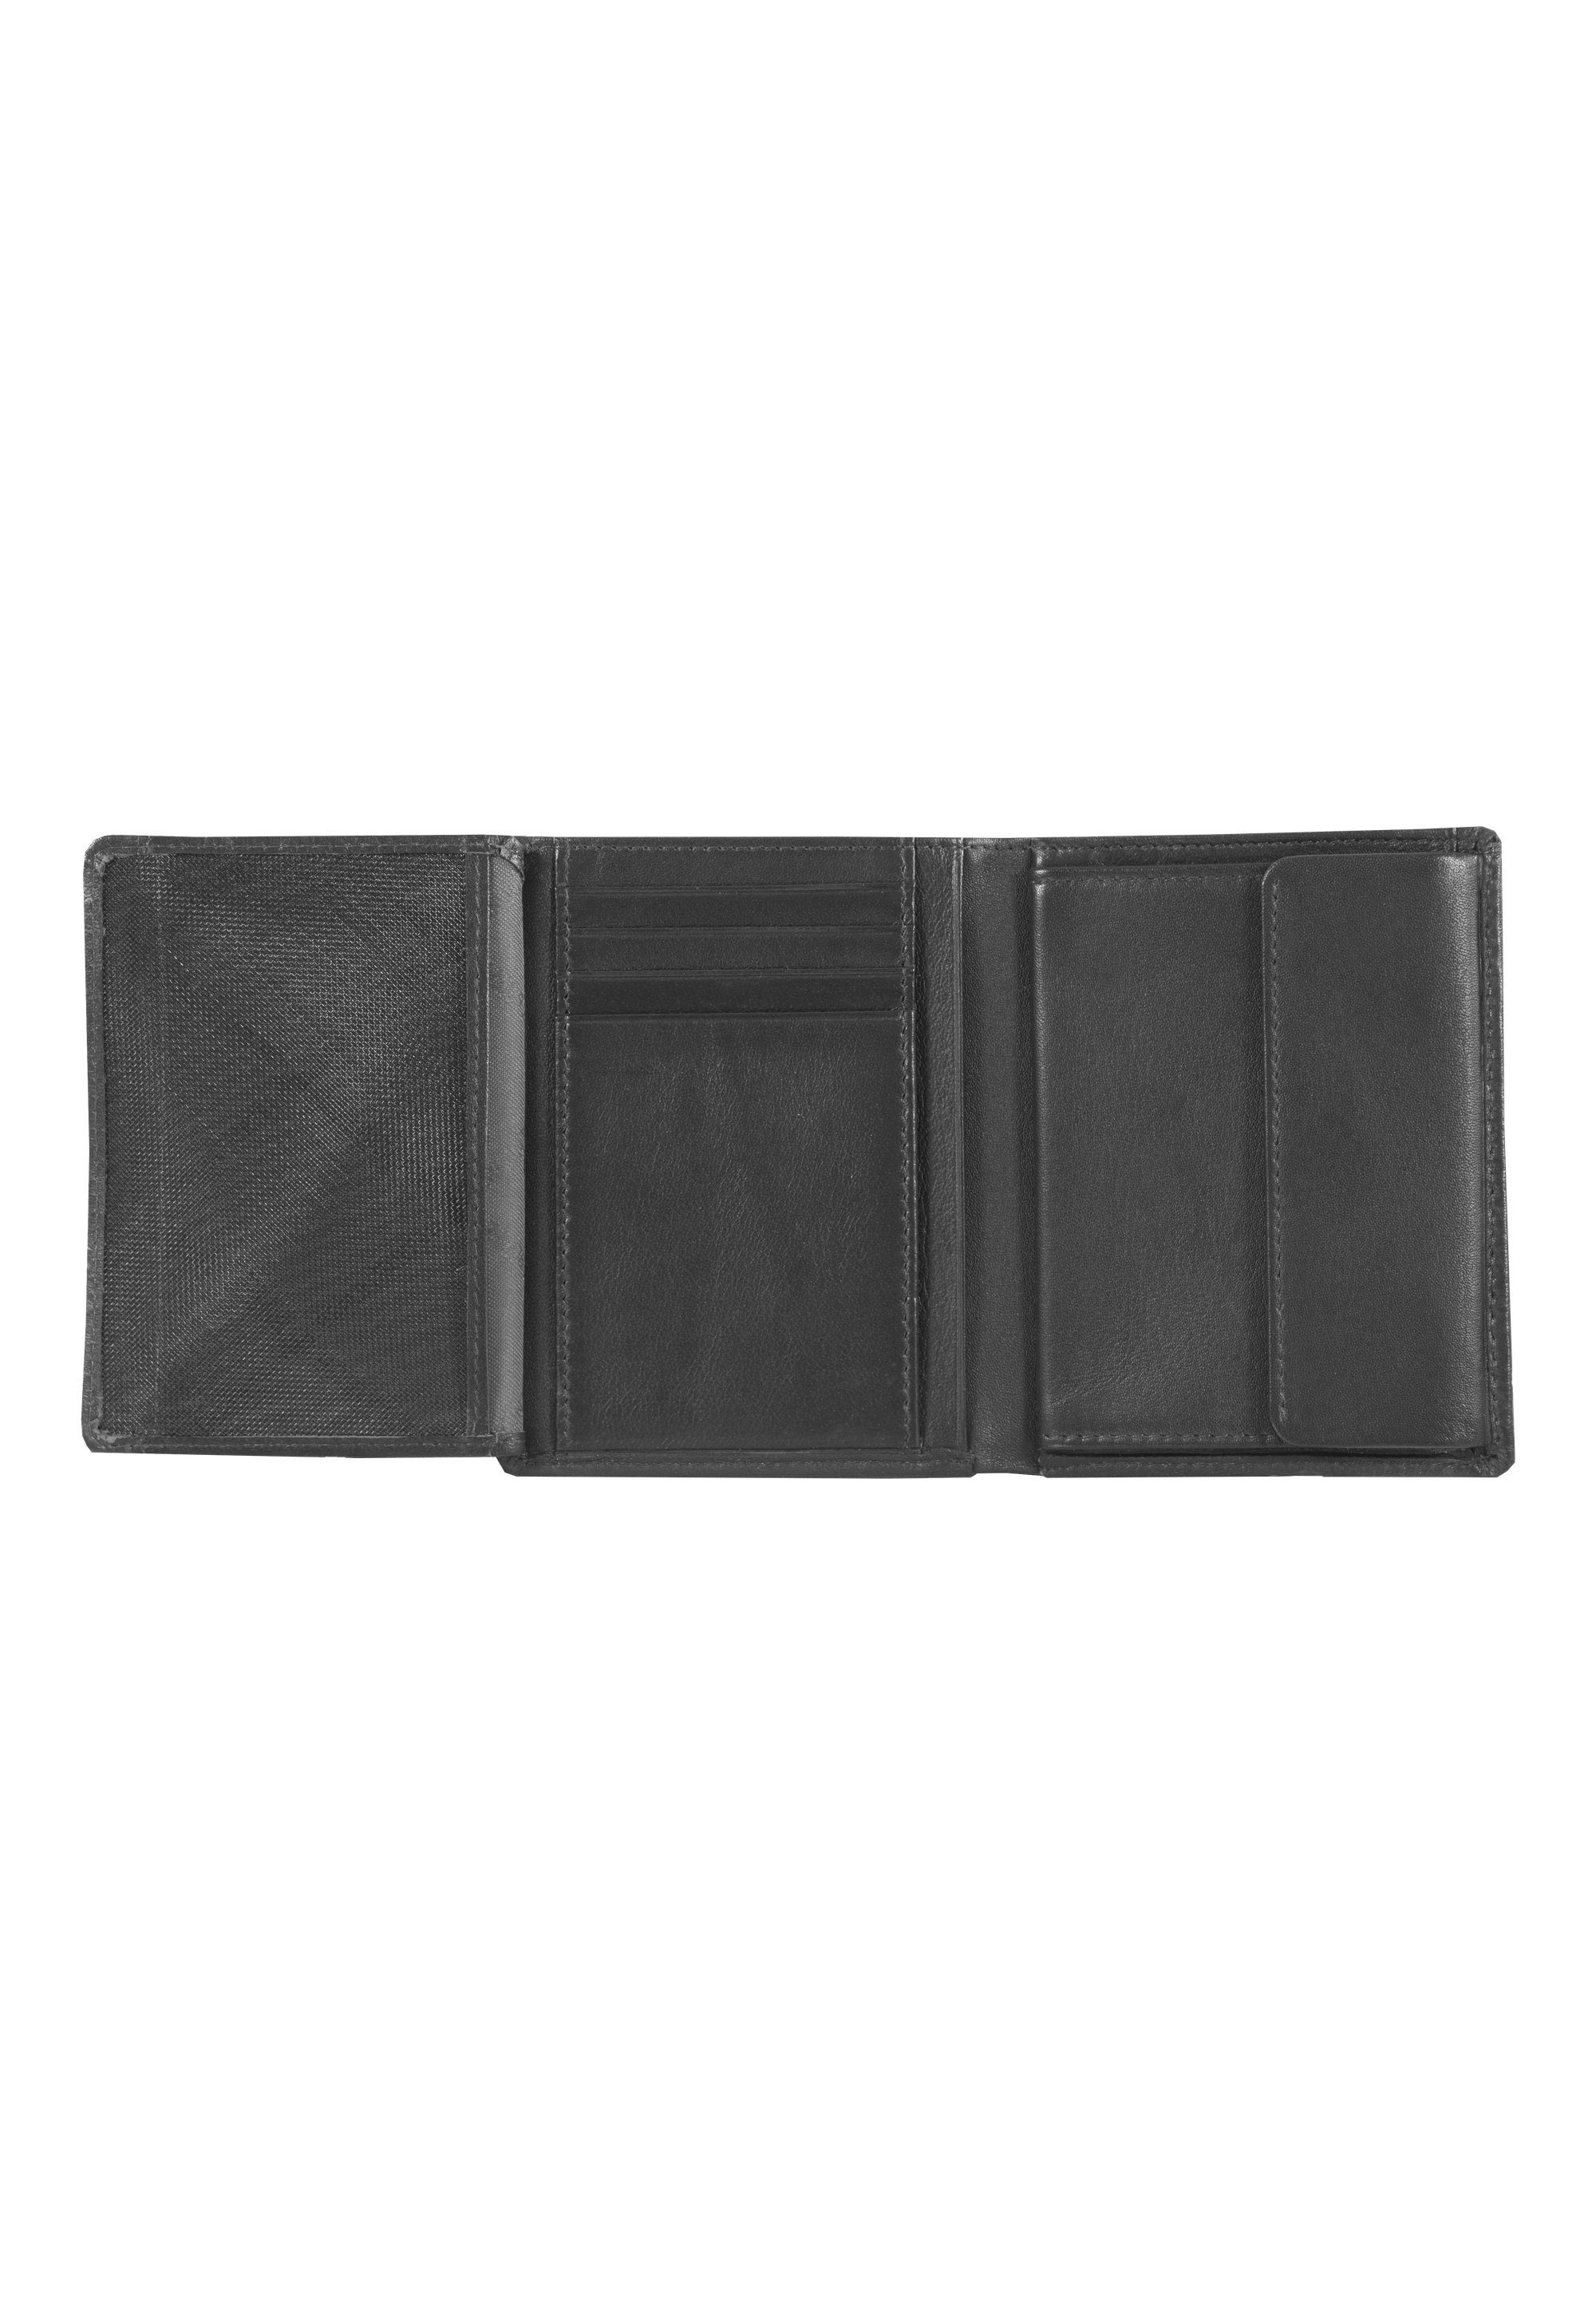 HENRY, Brieftasche Hochkantformat schwarz Braun im Büffel